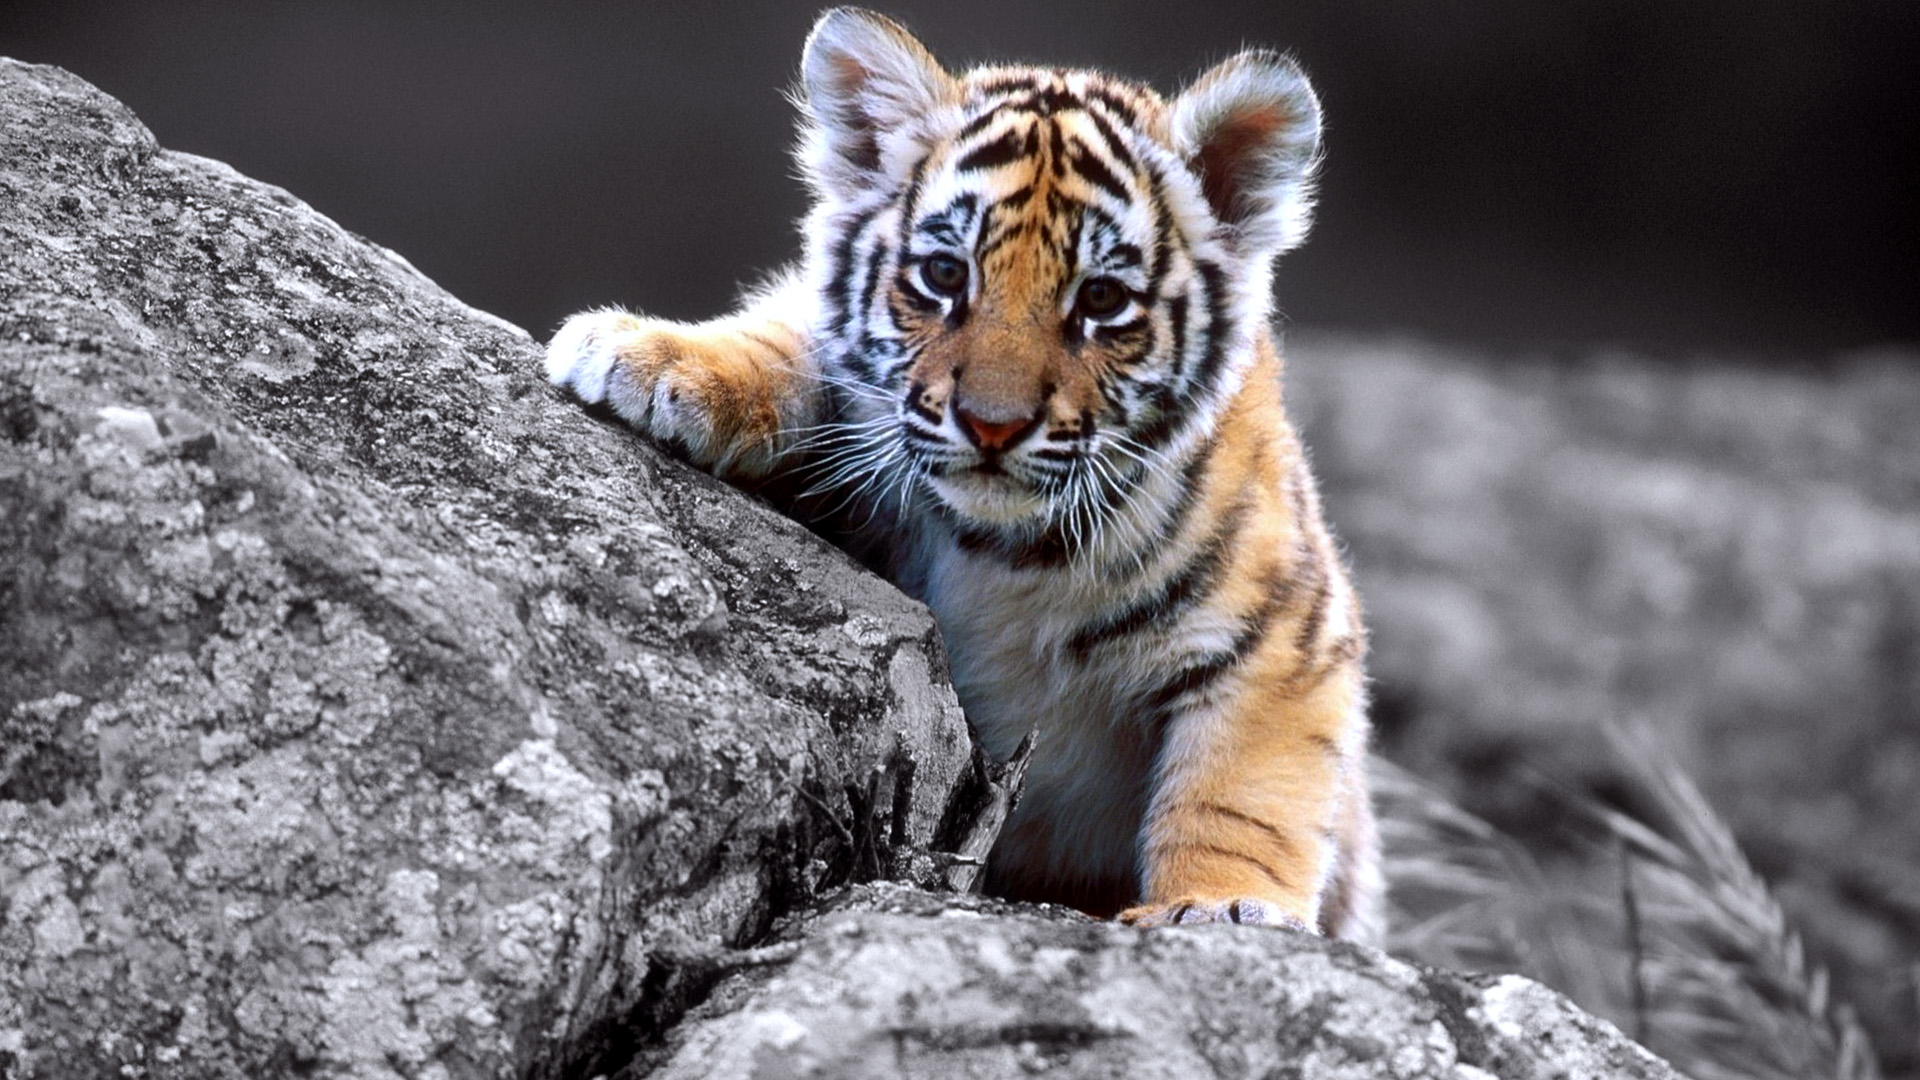 Cute Baby Tiger Full Wallpaper